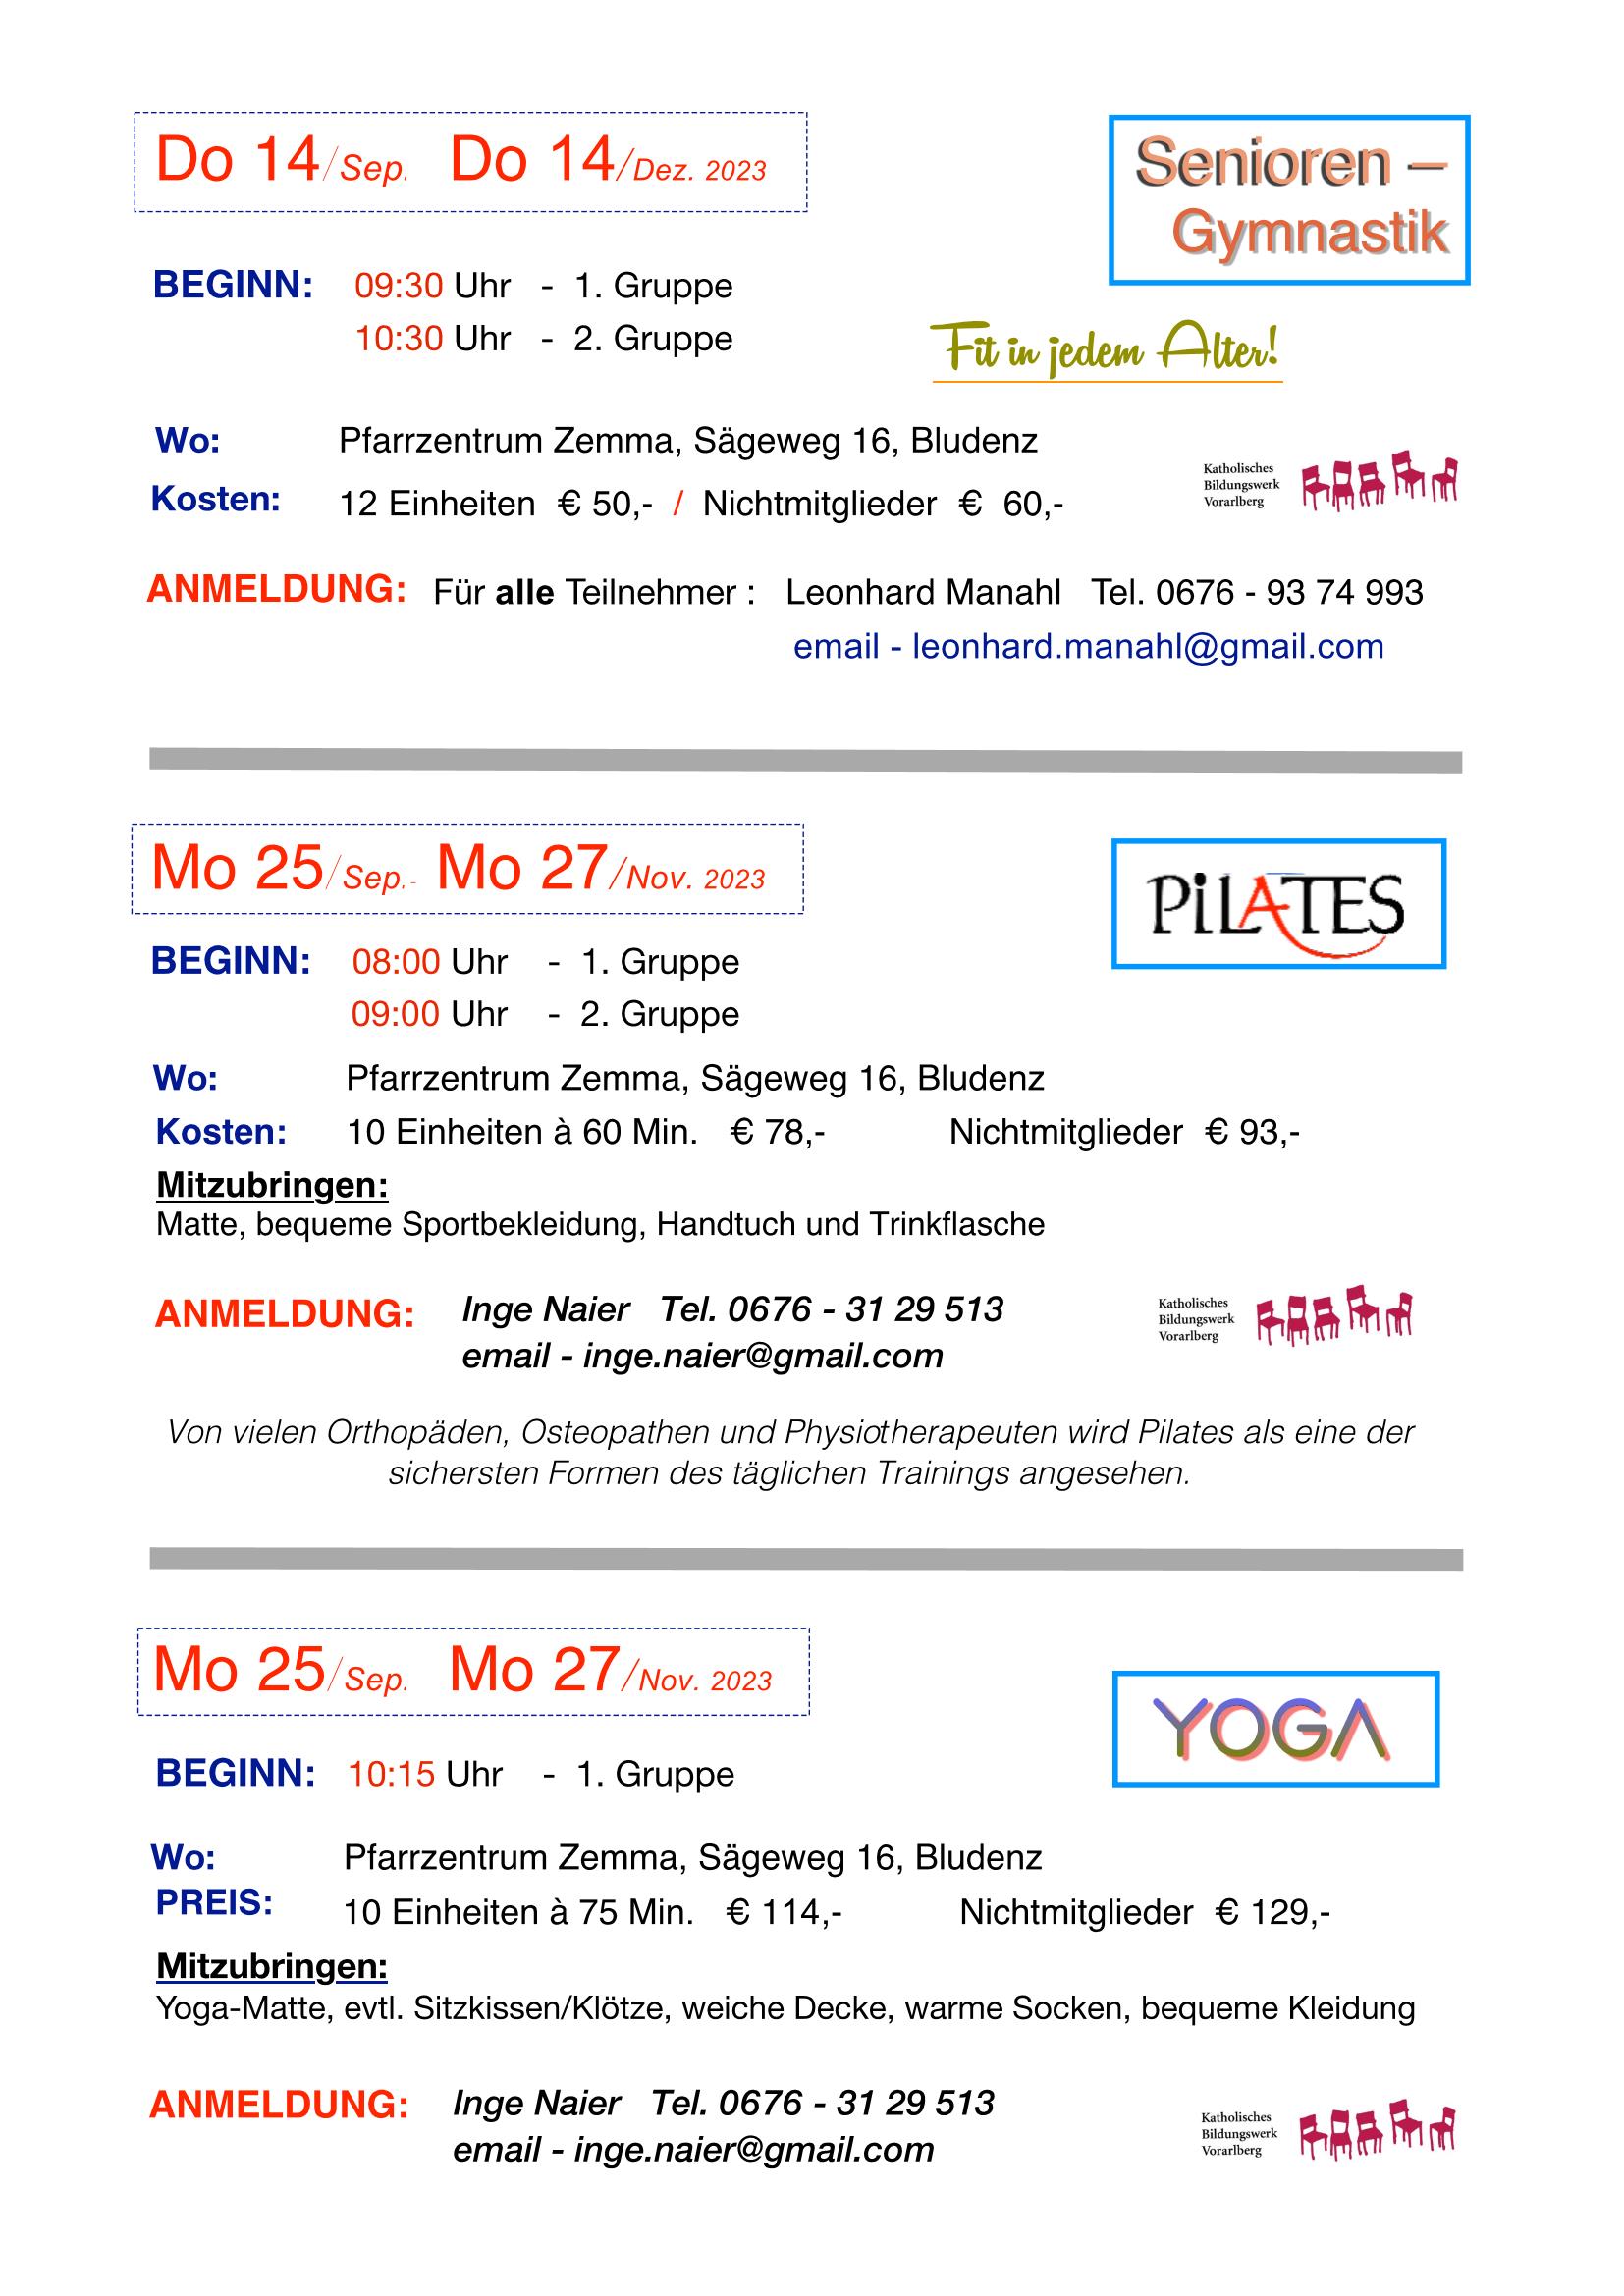 Gym Pilates Yoga 2023 2 003 Page 2